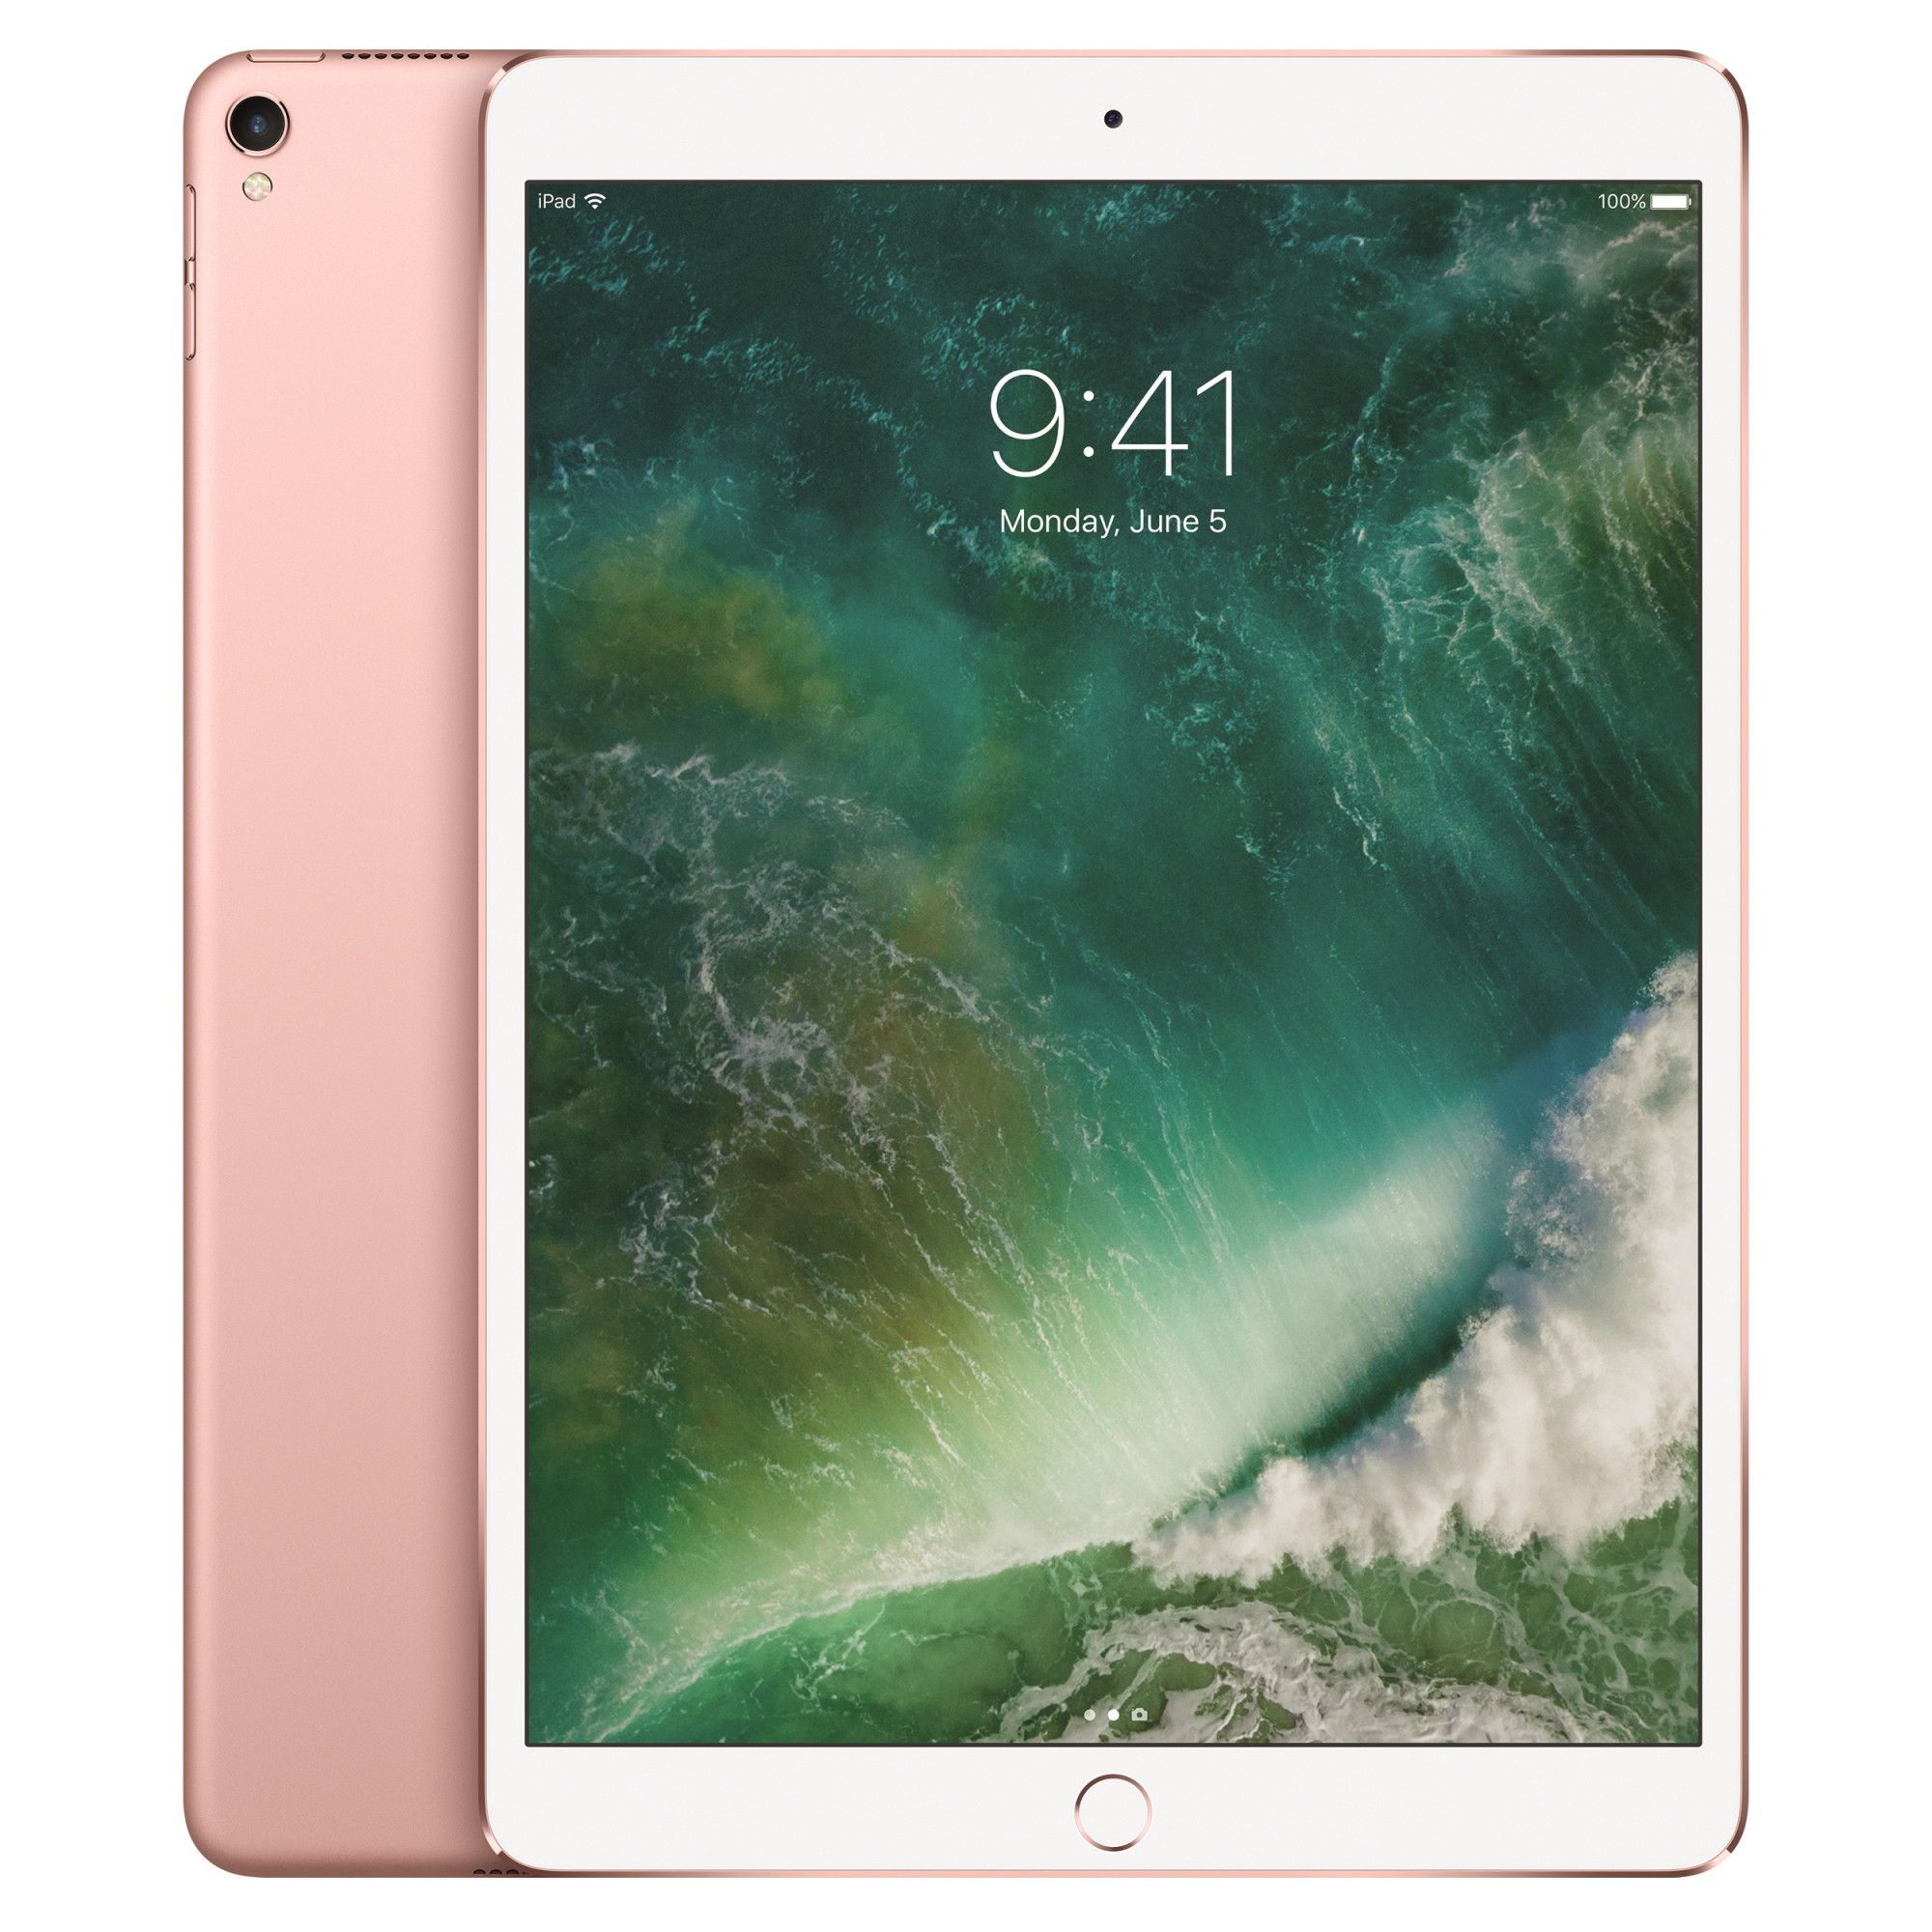 Tableta Apple iPad Pro 10.5 (2017) 64GB WiFi Rose Gold title=Tableta Apple iPad Pro 10.5 (2017) 64GB WiFi Rose Gold